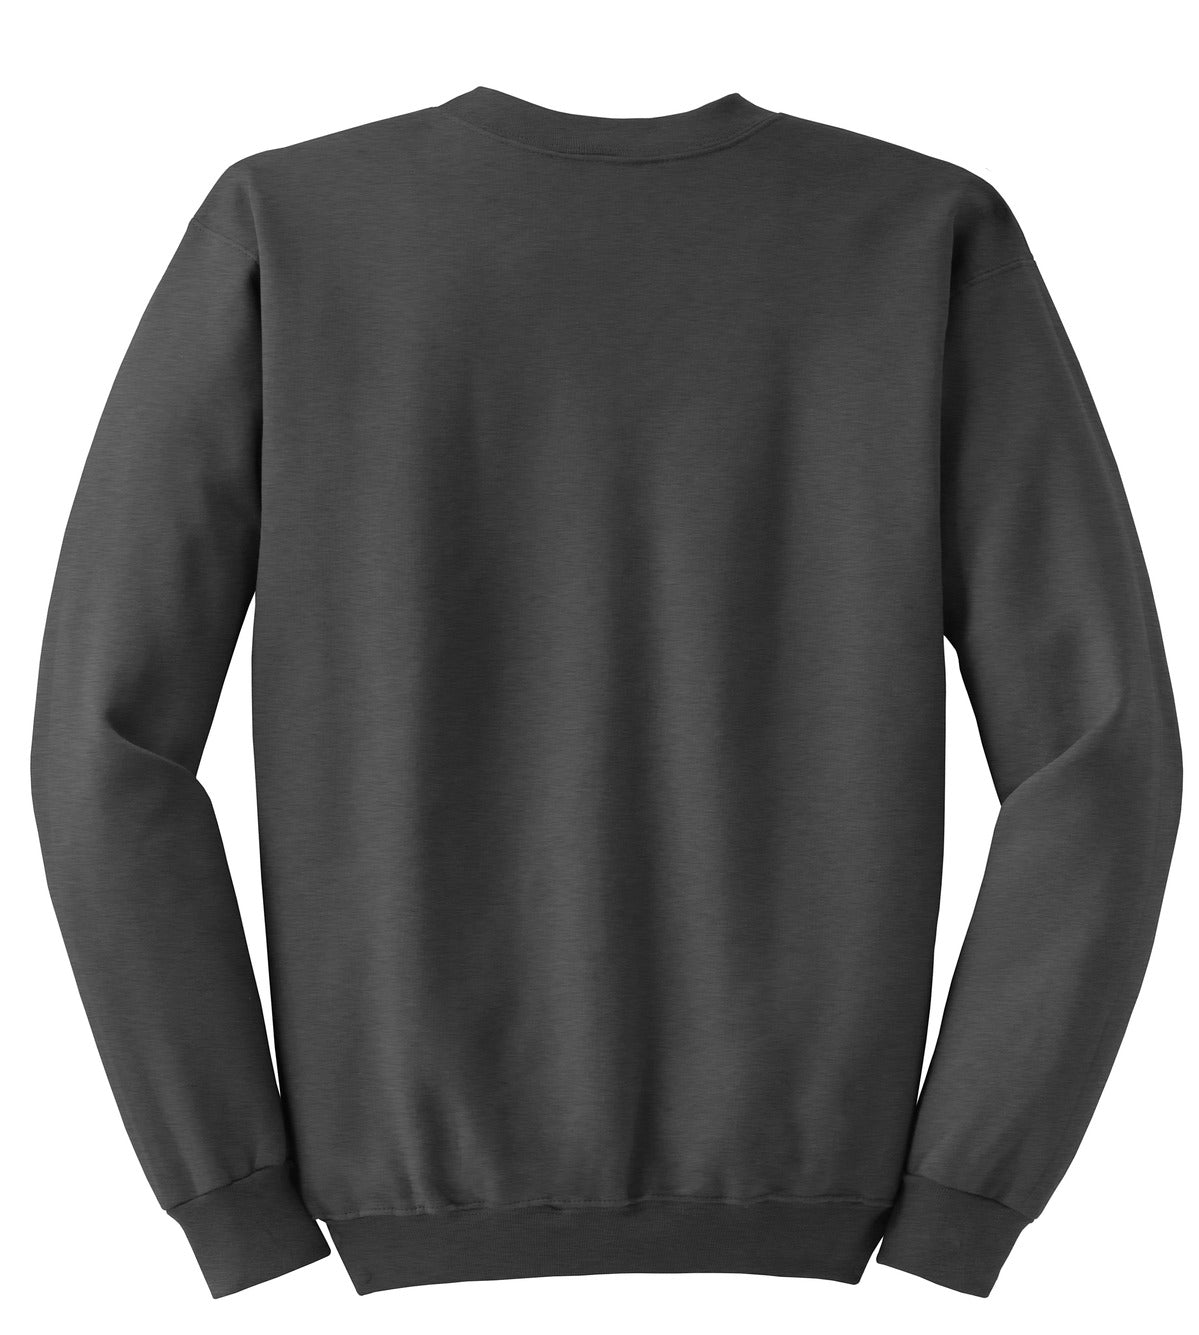 Hanes Ultimate Cotton - Crewneck Sweatshirt. F260